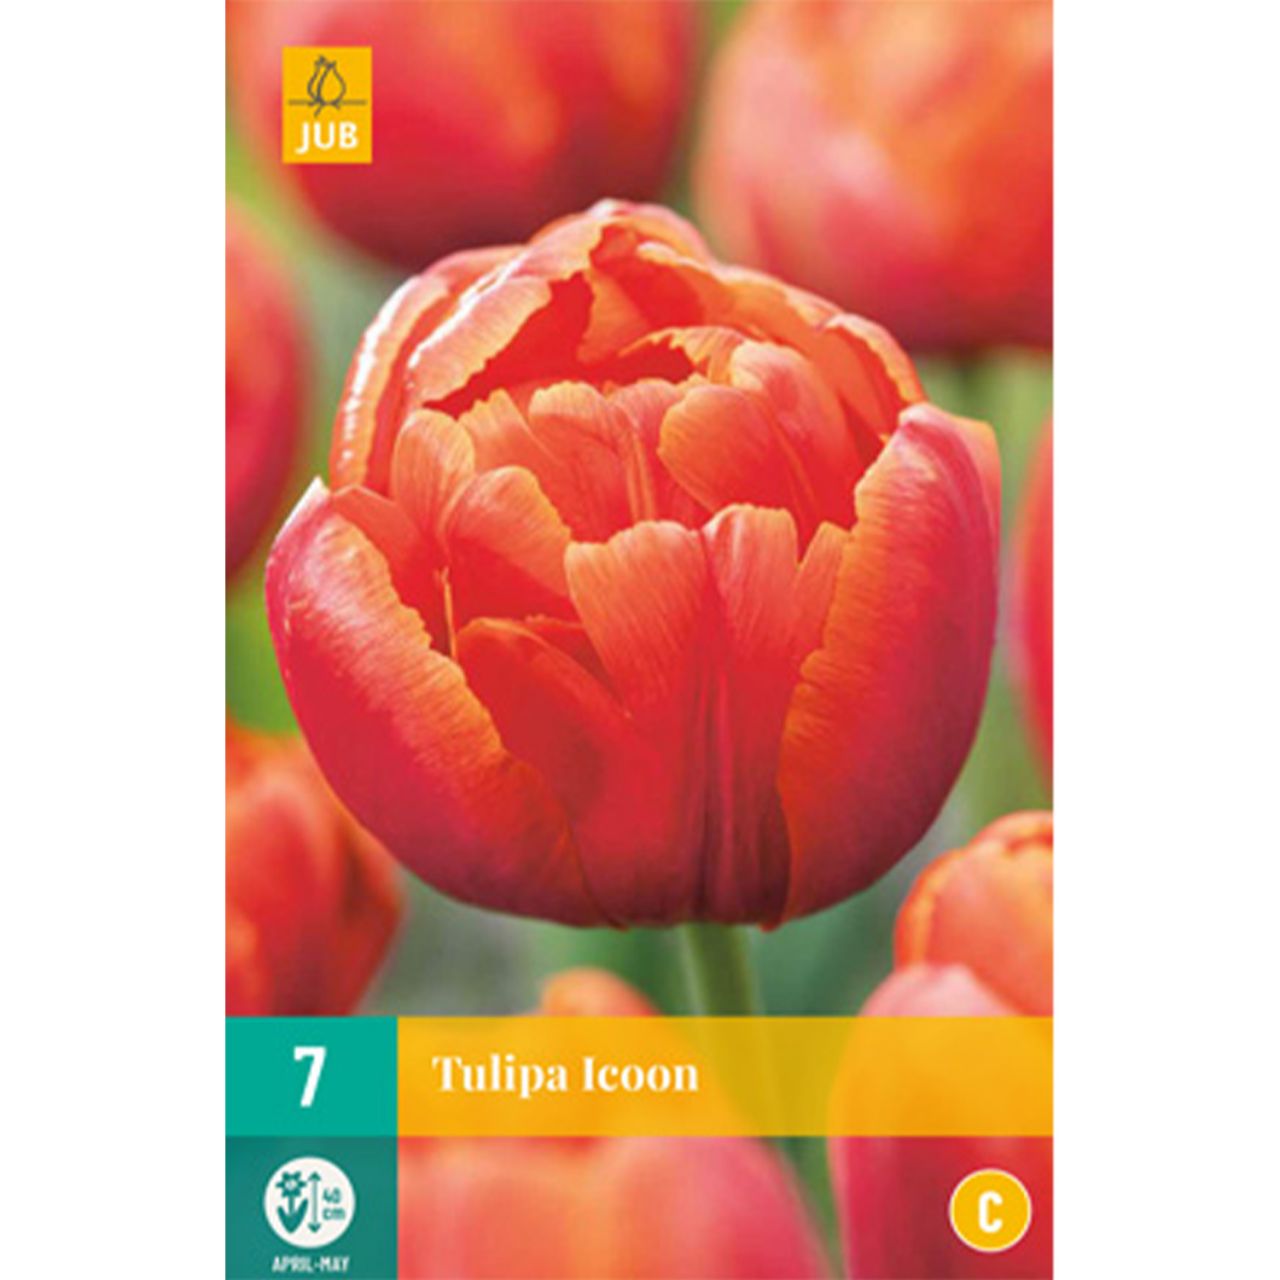 Kategorie <b>Herbst-Blumenzwiebeln </b> - Gefüllte späte Tulpe 'Icon' - 7 Stück - Tulipa 'Icon'